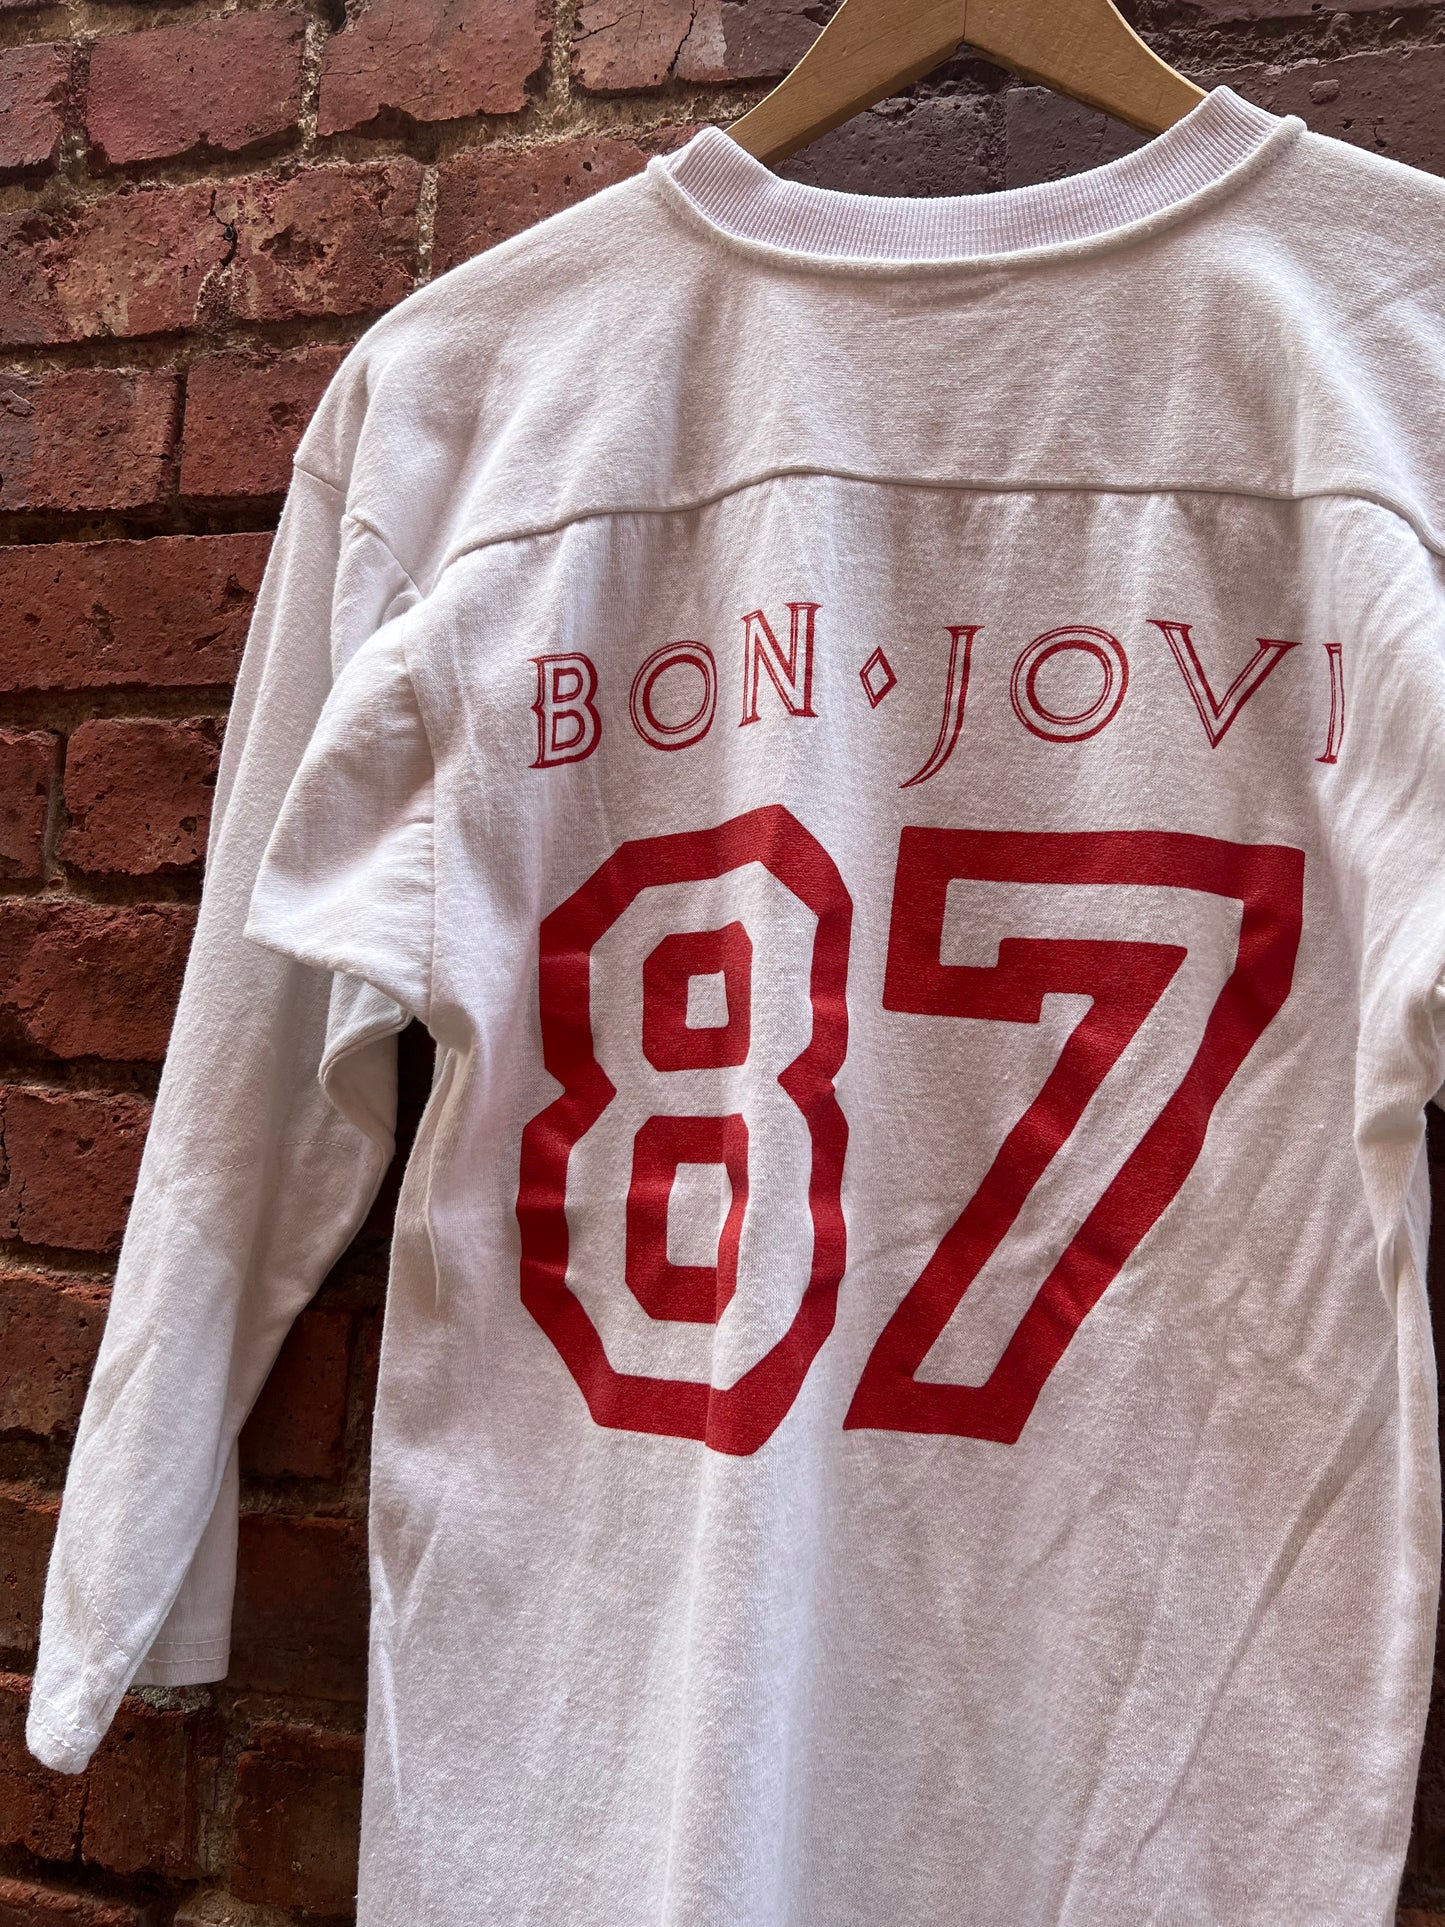 BON JOVI 1987 “Crew Member” Vintage Tour Shirt Nassau Coliseum - Size M